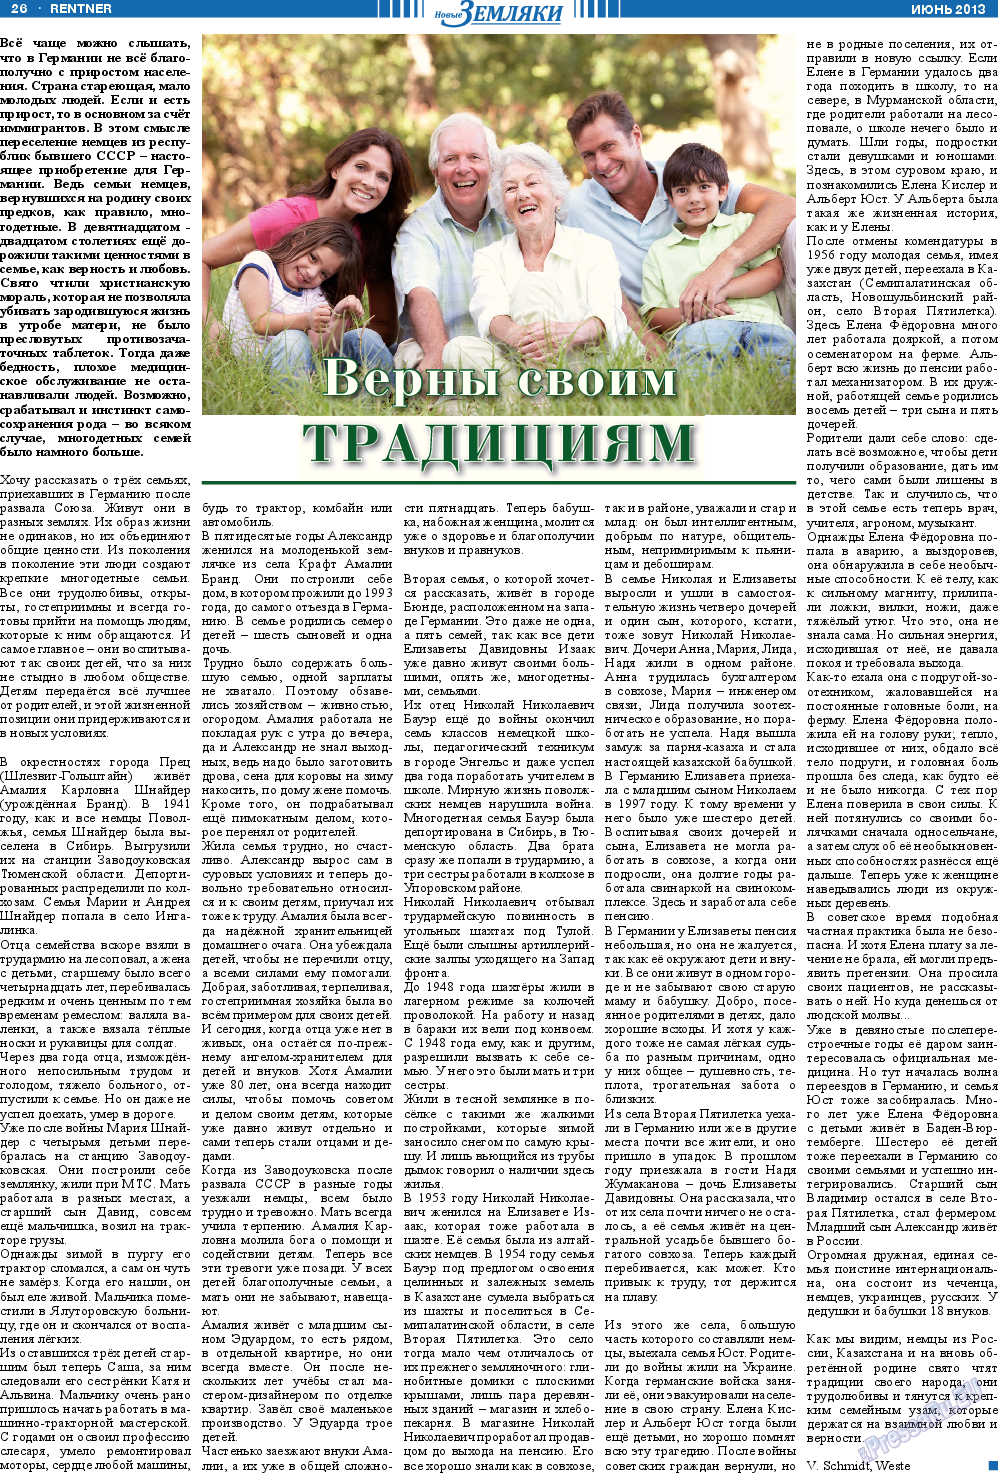 Новые Земляки, газета. 2013 №6 стр.26